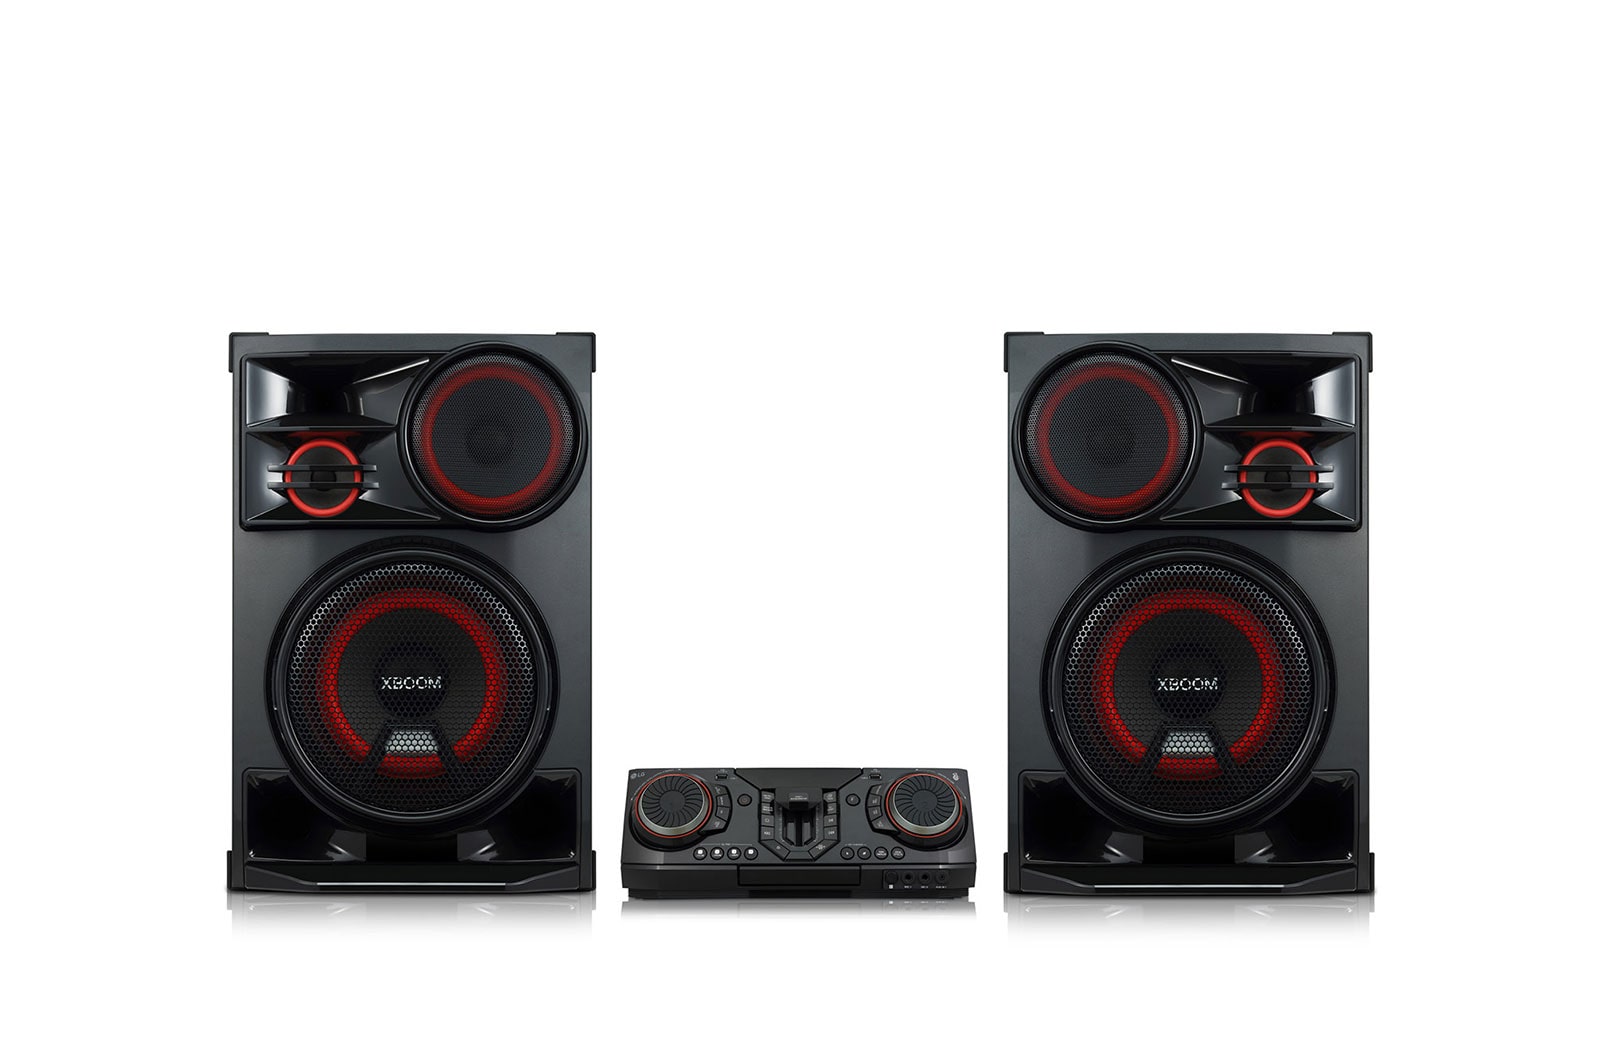 LG Equipo de sonido de 3500W de potencia LG XBOOM La Bestia de alta potencia para crear fiestas únicas con luces multicolor, efectos DJ, Karaoke y entrada para micrófonos. Además puedes crear la playlist perfecta gracias a la multiconectividad Bluetooth. , CL98